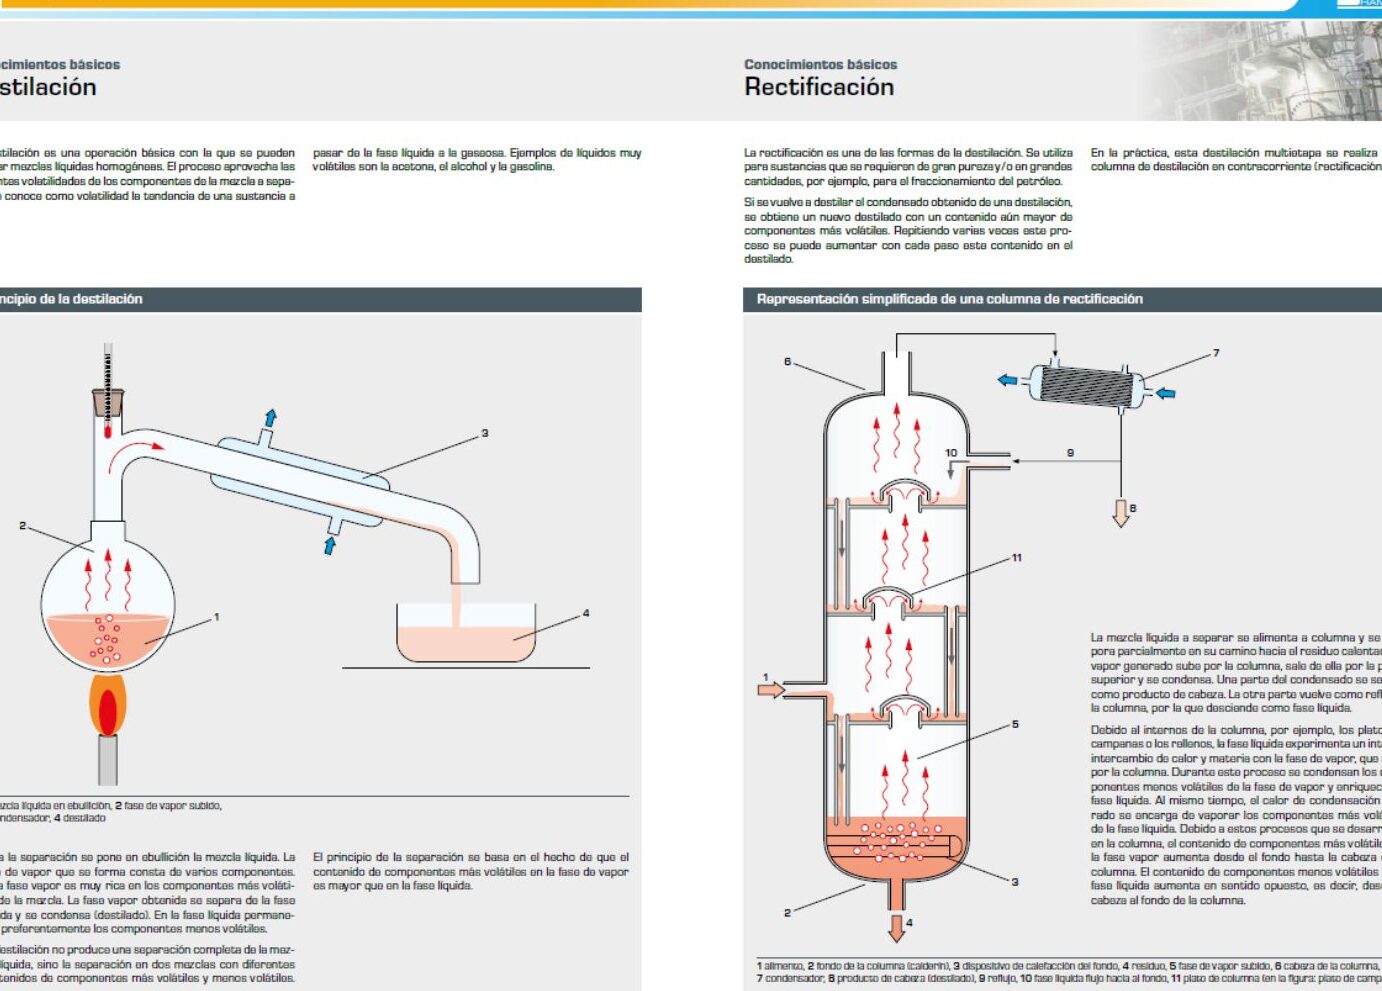 Diagrama de destilação: Um passo a passo para a separação de líquidos.